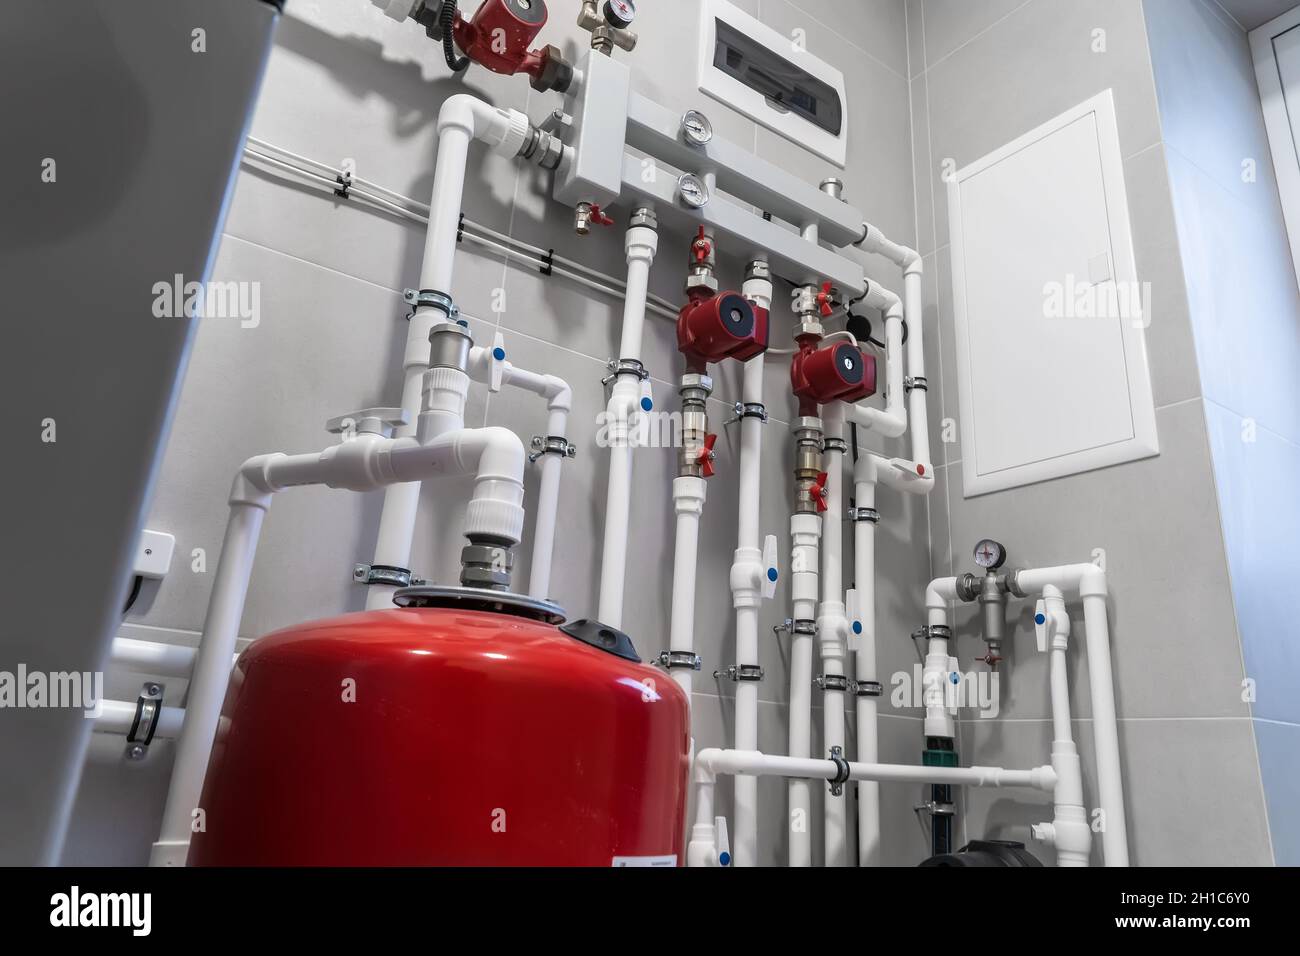 Impianto di riscaldamento casa con moderni tubi in plastica, manometri e tubi in primo piano nel locale caldaie. Foto Stock